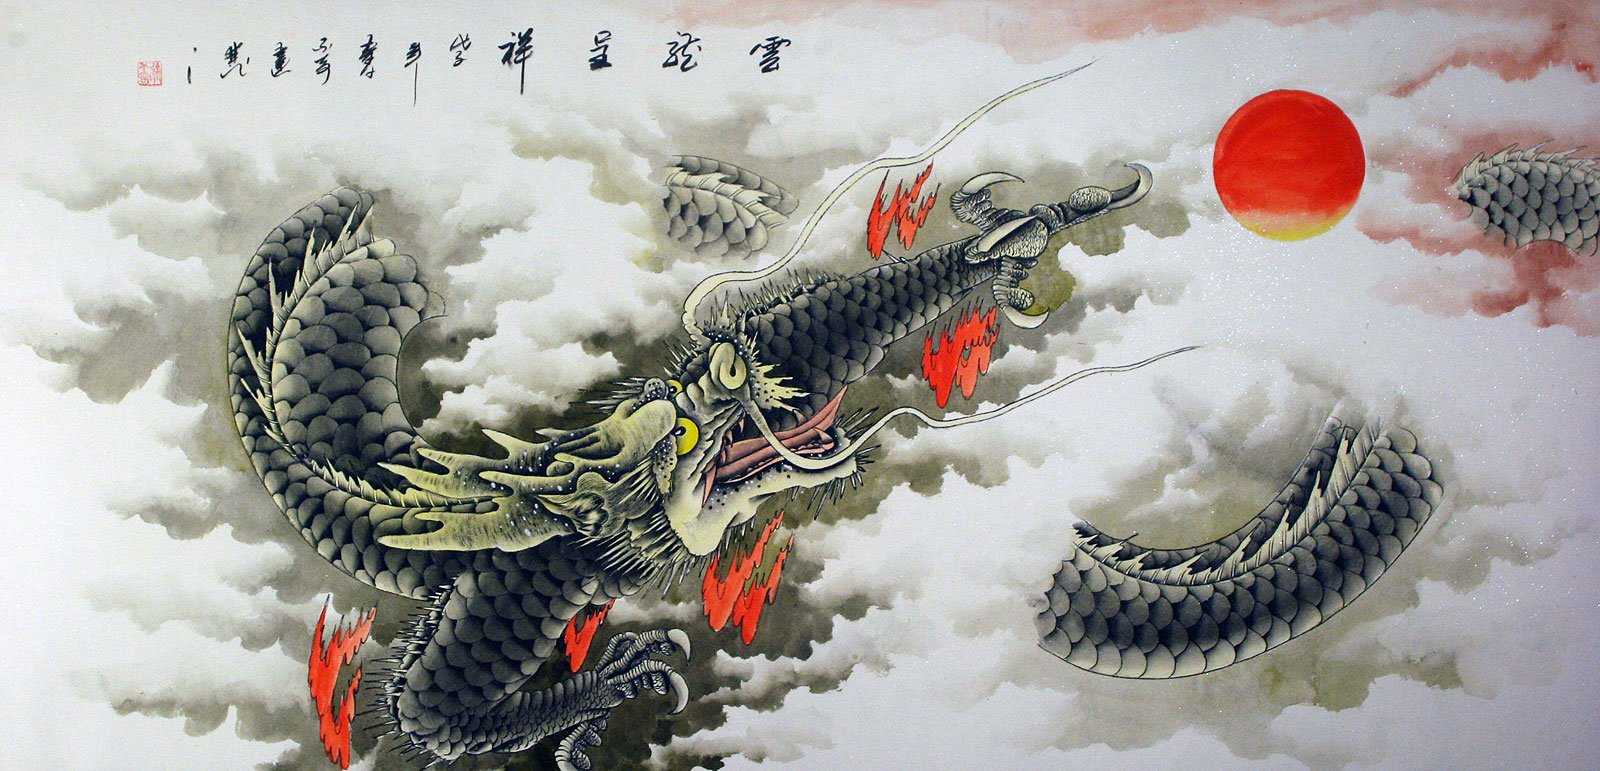 Правда ли, что в китае проснулся дракон? | хайтек агрегатор